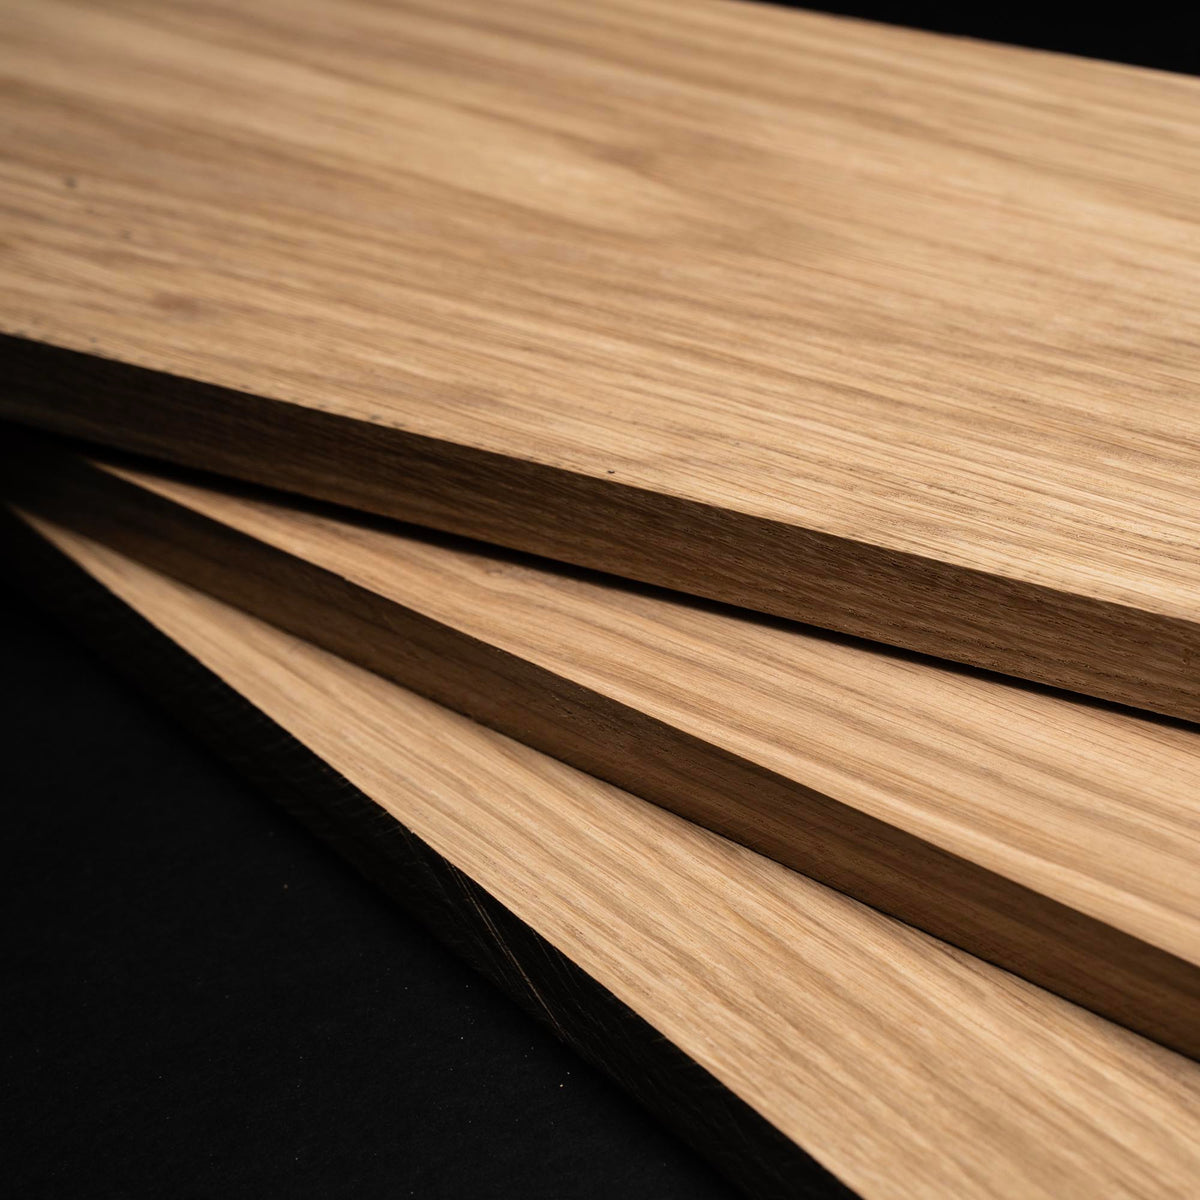 4/4 1” White Oak Boards - Kiln Dried Dimensional Lumber - Cut to Size White Oak Board